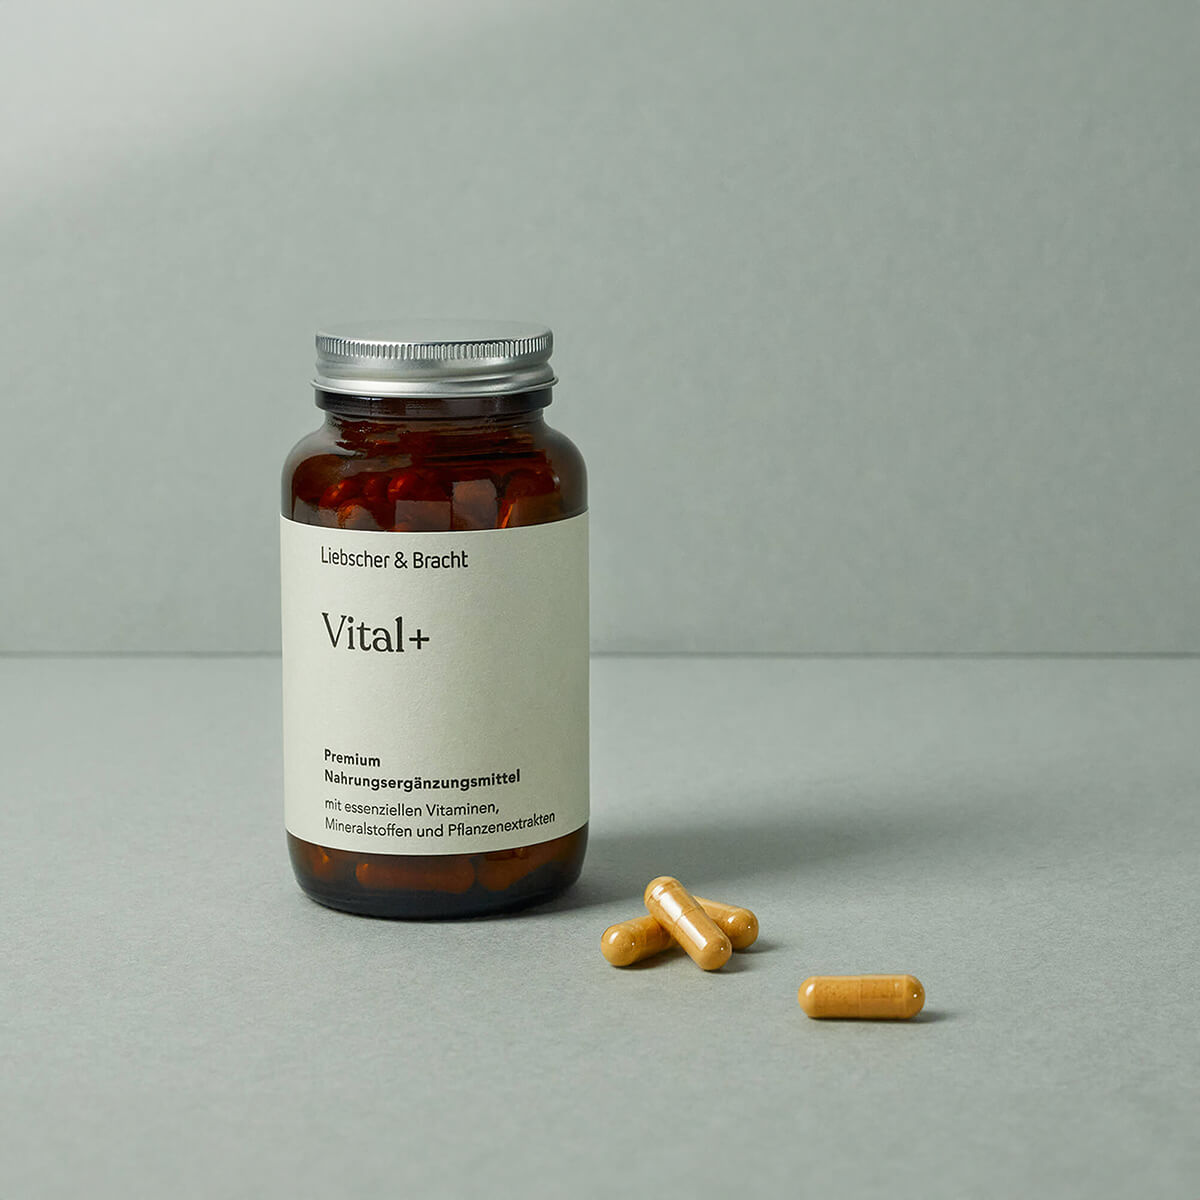 Das Nahrungsergänzungsmittel Vital+ wird in einem braunen Glasbehälter präsentiert. 